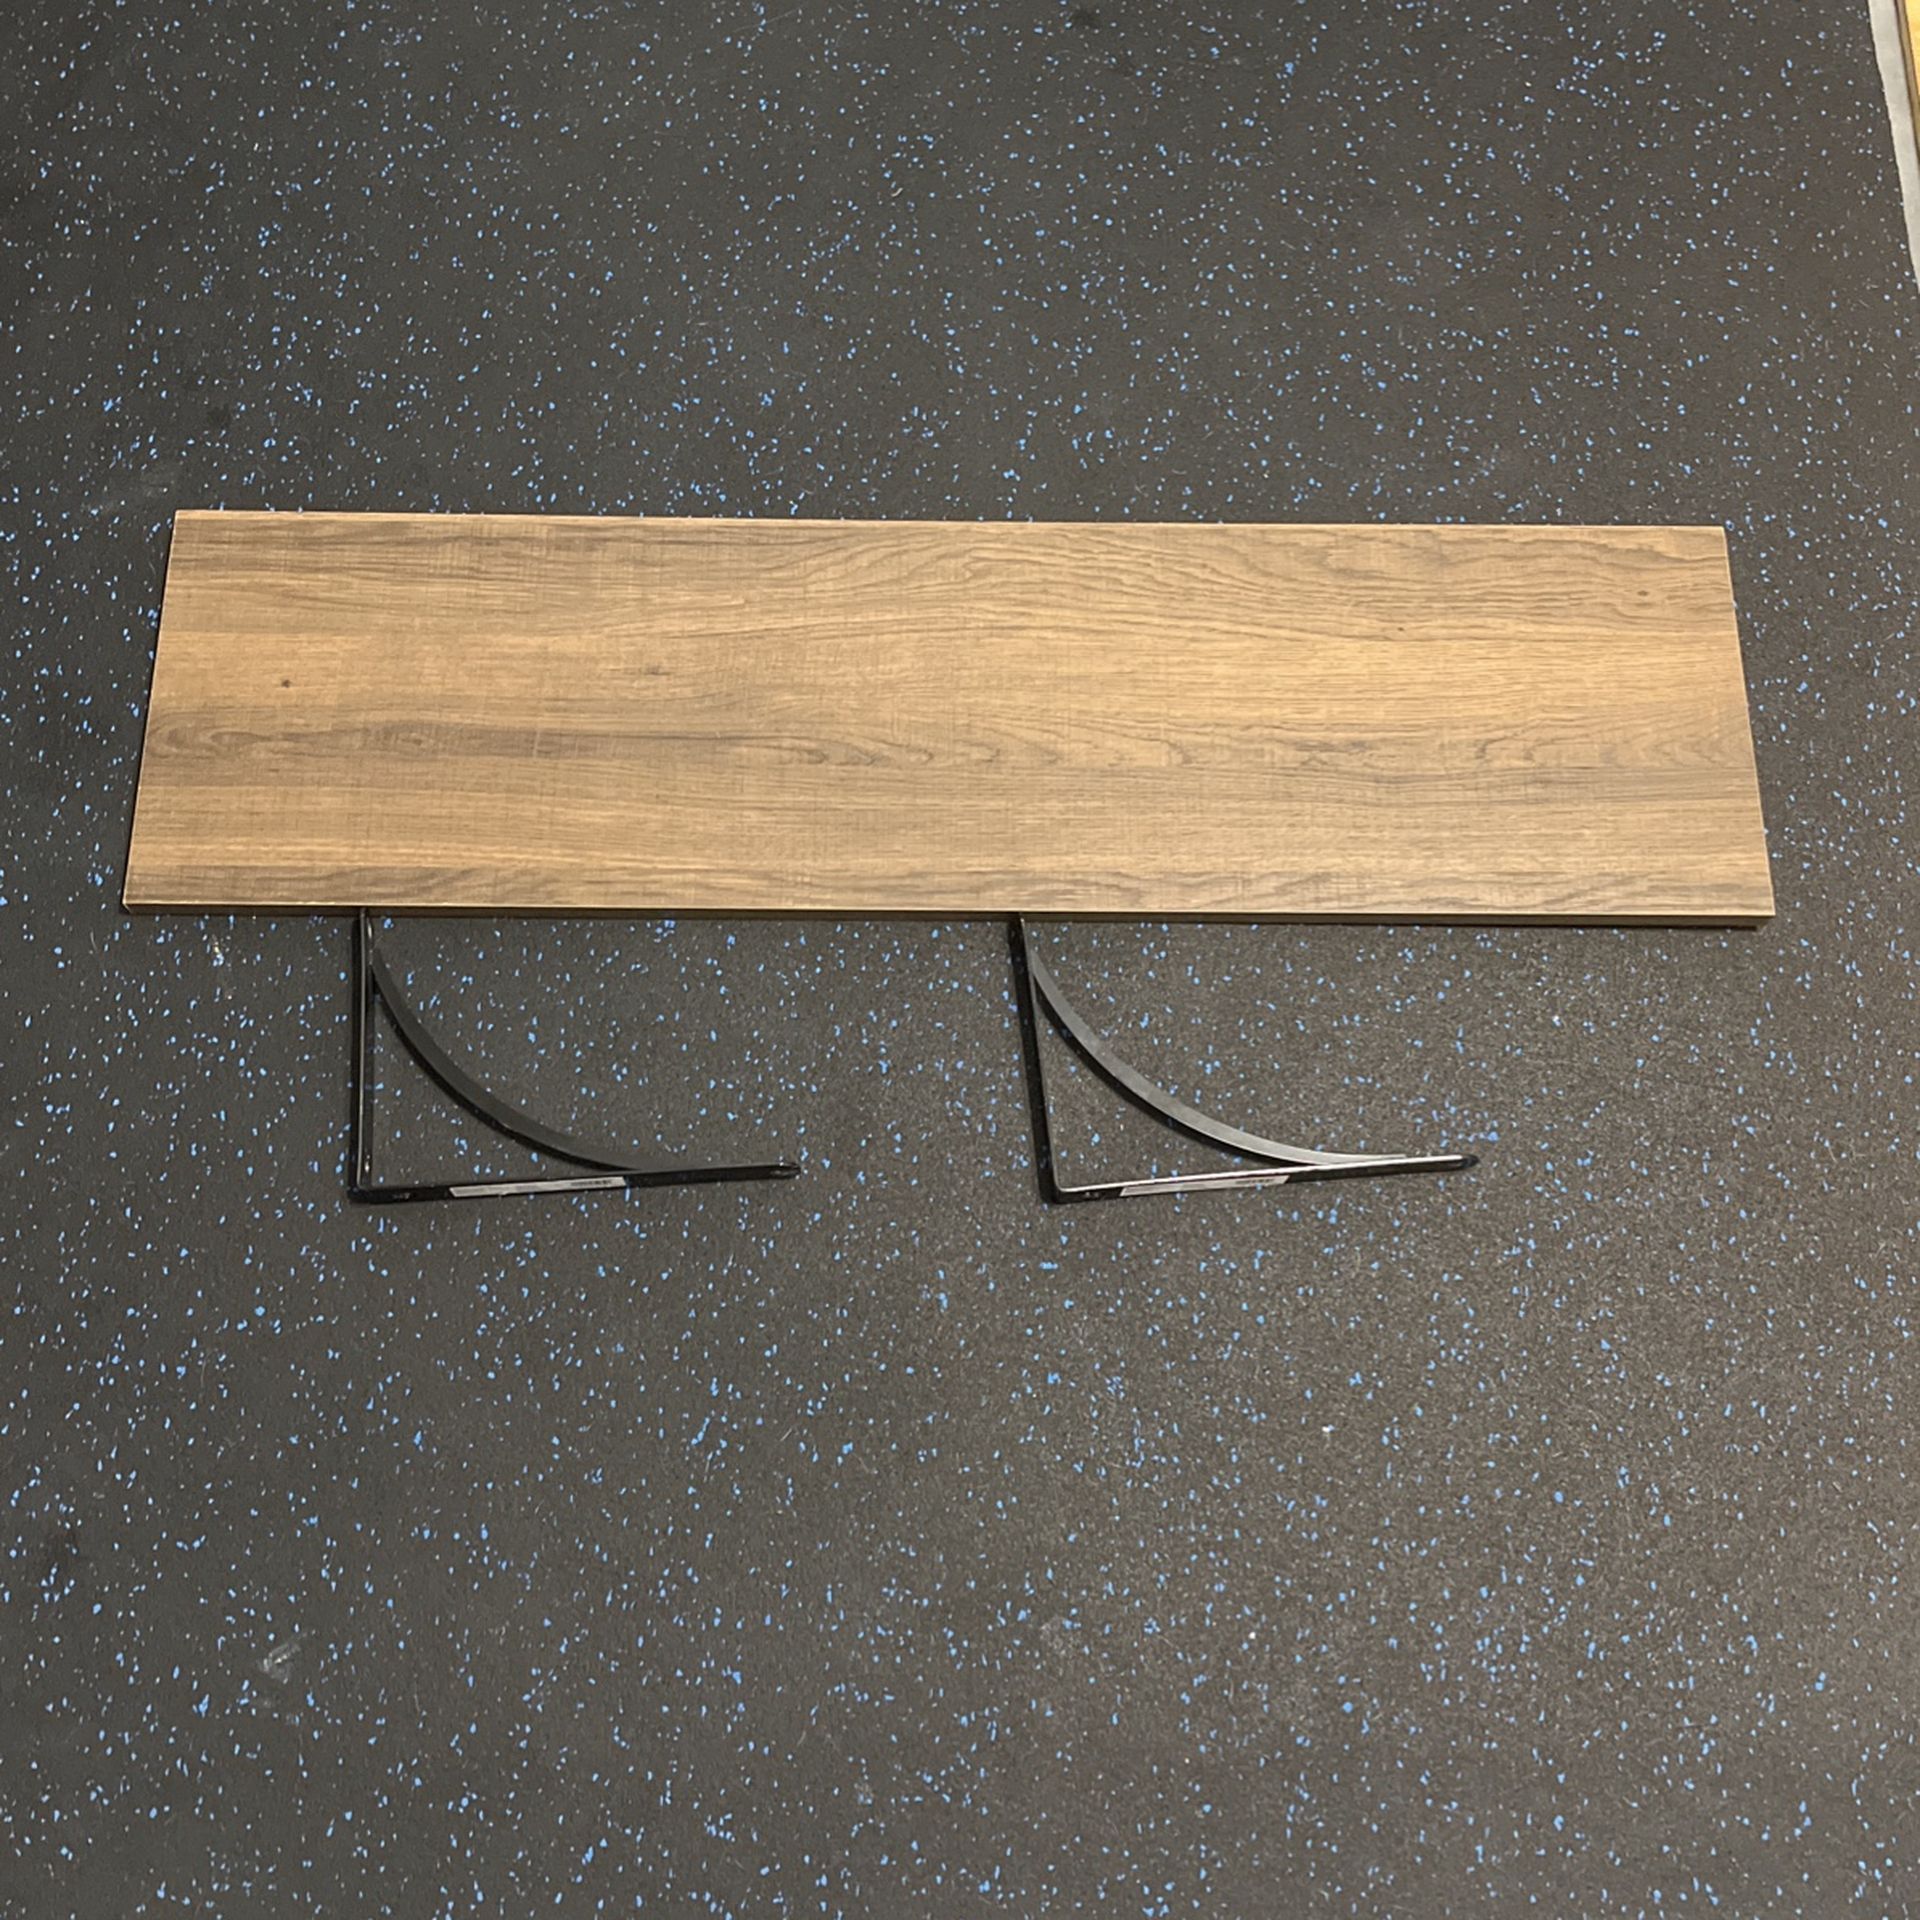 Wood Shelf with brackets